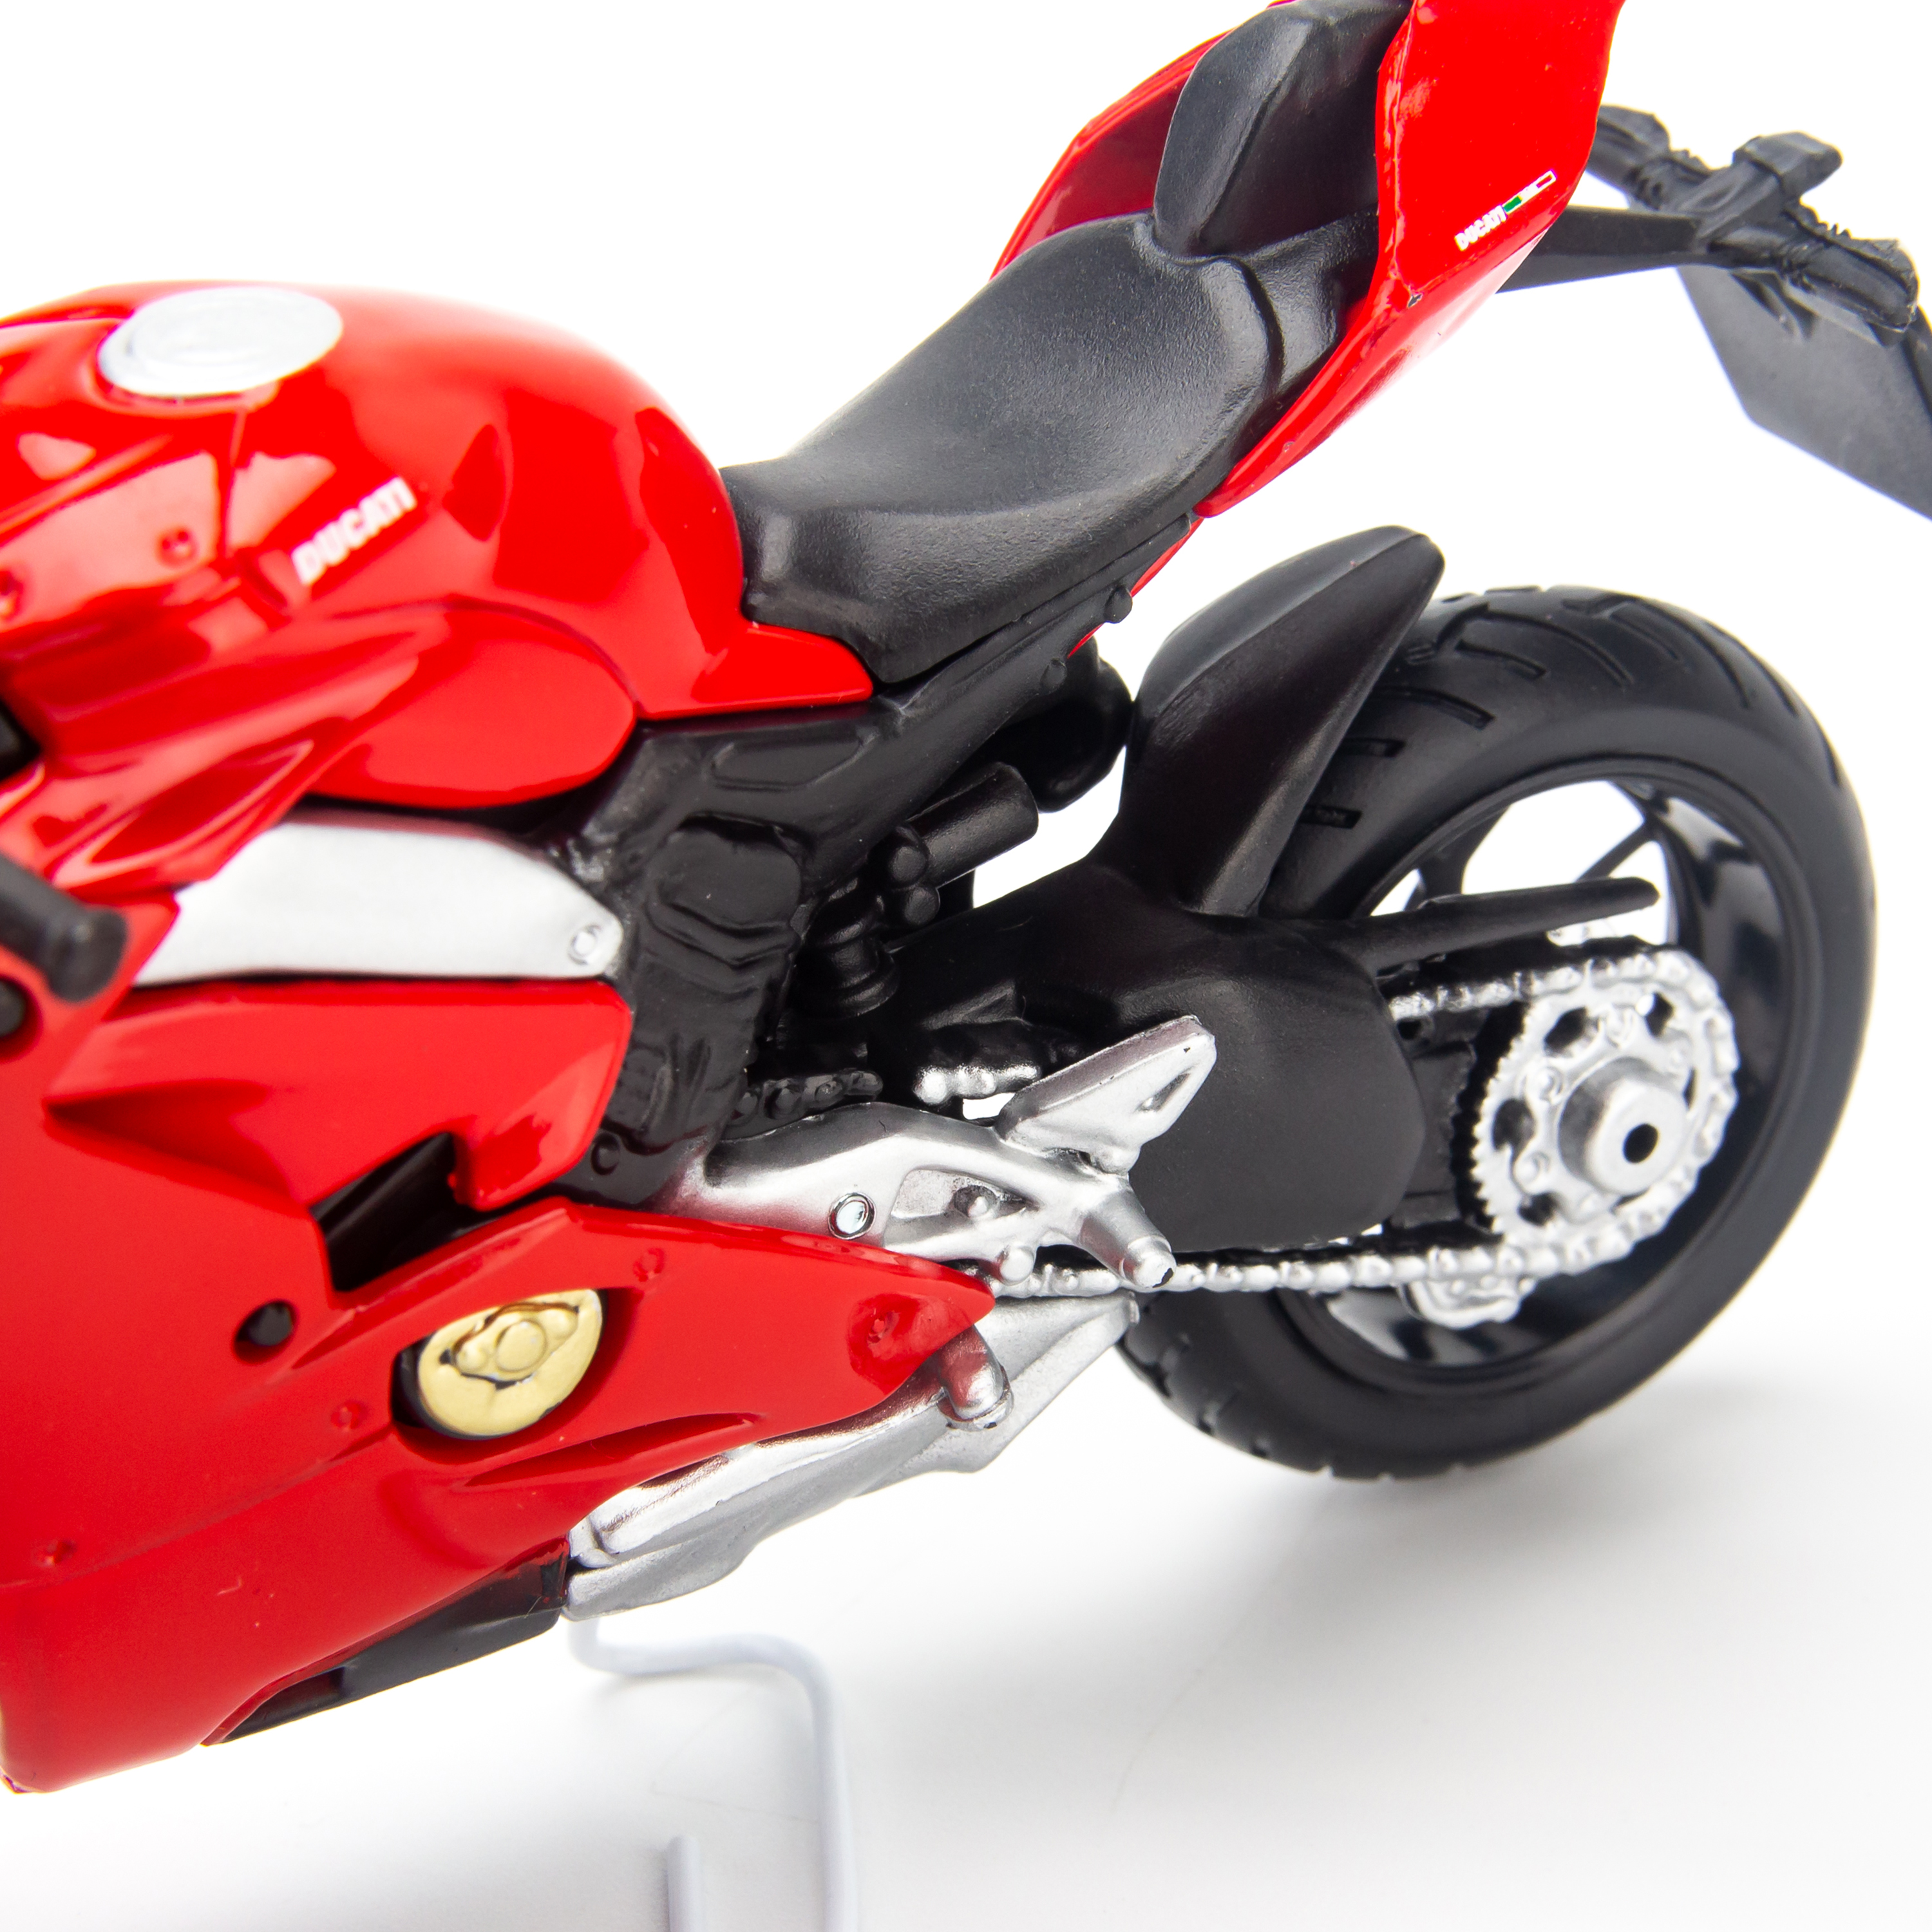 Mô hình xe mô tô Ducati Panigale V4 1:18 Bburago - 18-51080